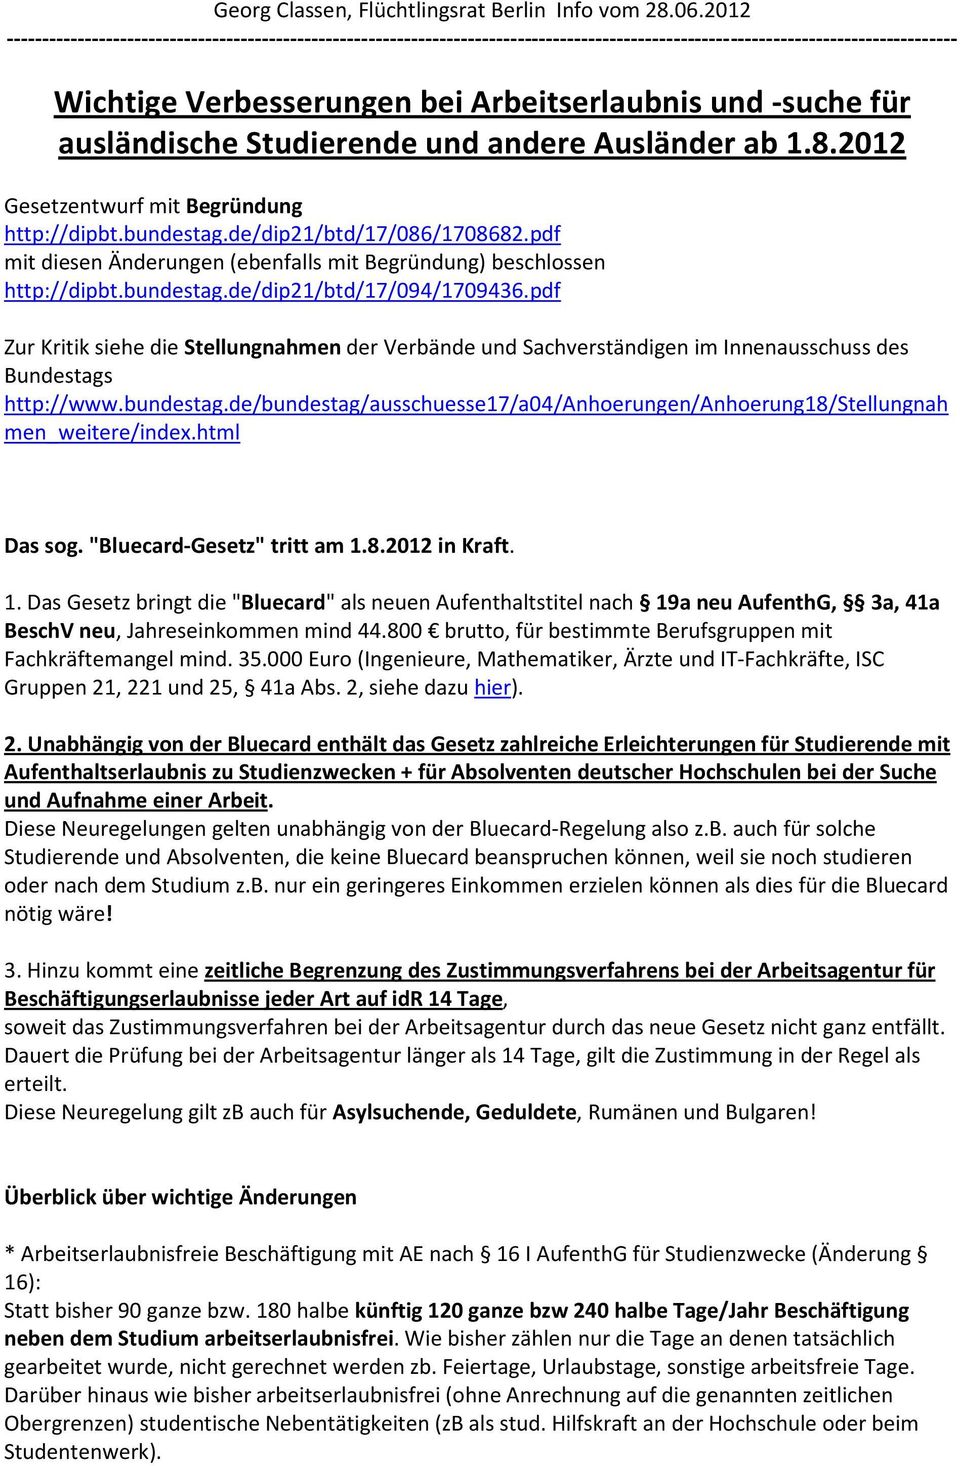 ausländische Studierende und andere Ausländer ab 1.8.2012 Gesetzentwurf mit Begründung http://dipbt.bundestag.de/dip21/btd/17/086/1708682.